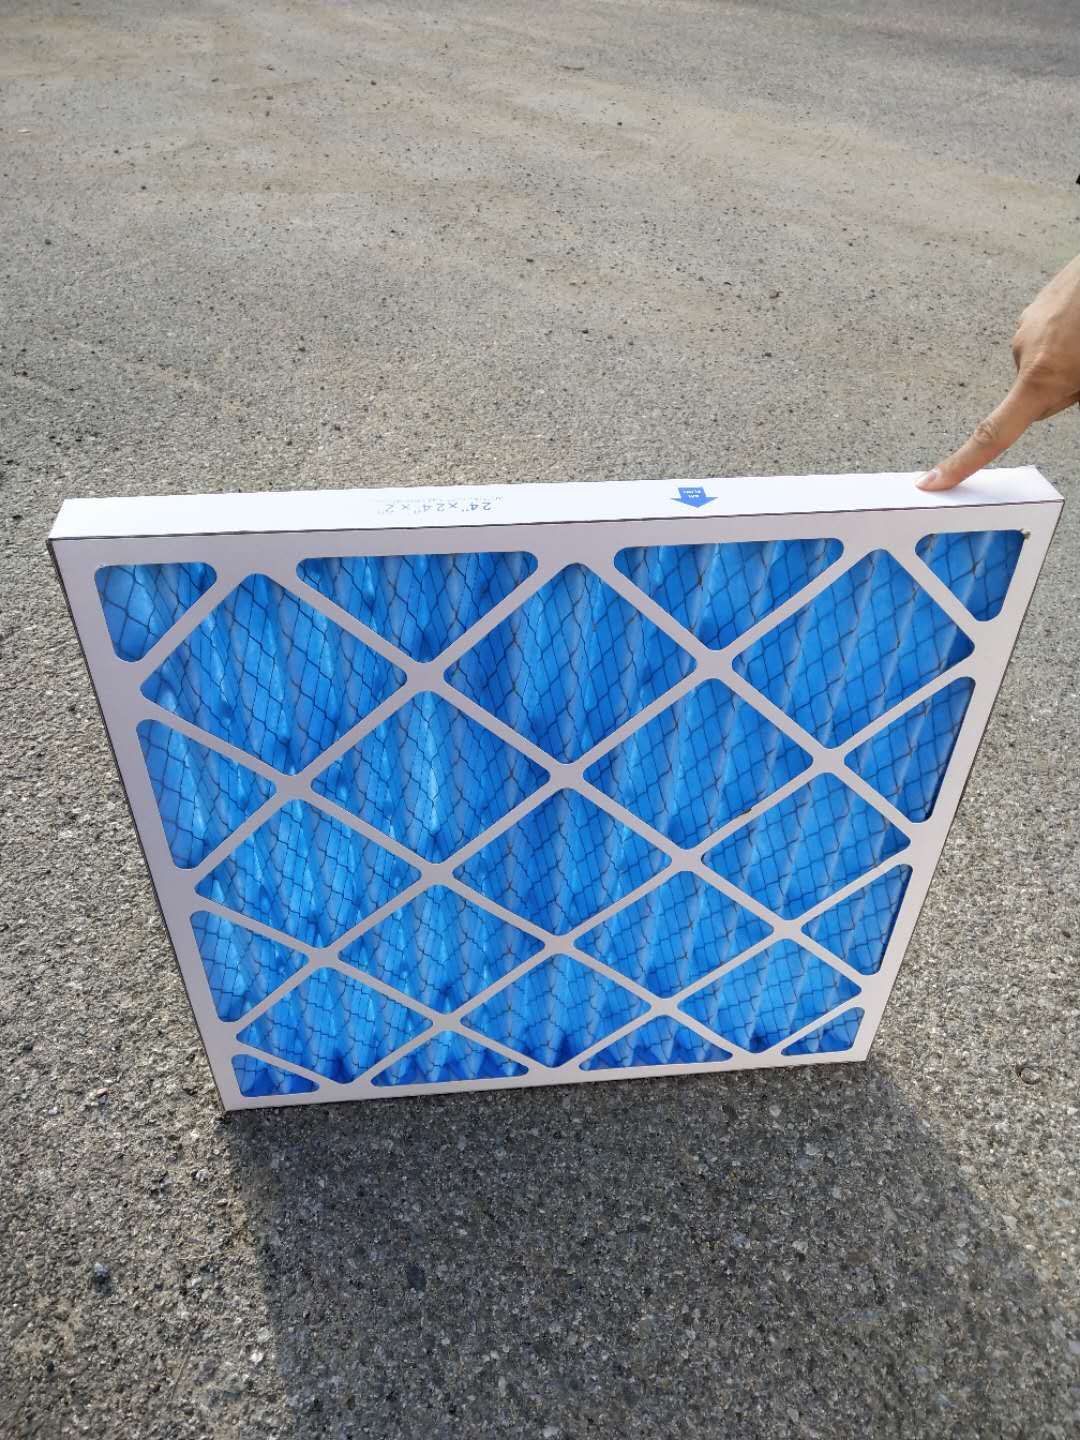 Materiale del filtro blu G4